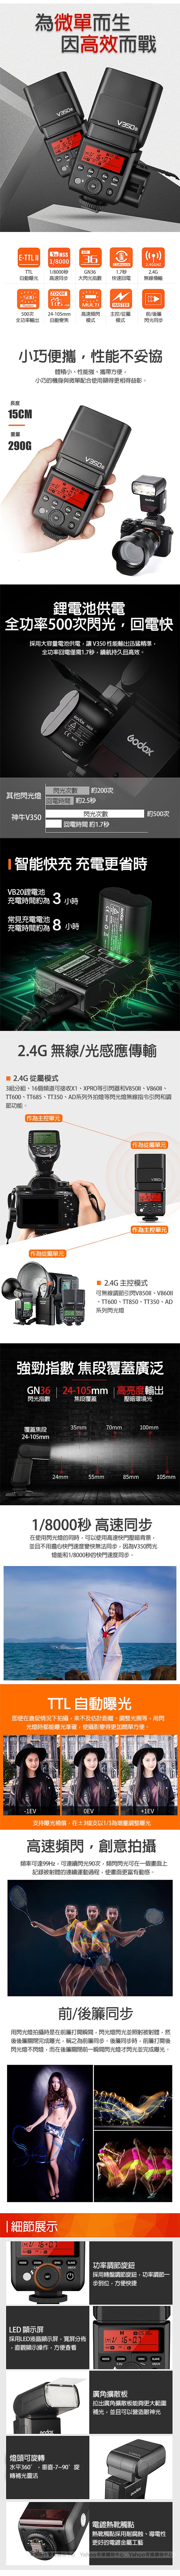 GODOX 神牛 V350 TTL 鋰電池閃光燈 (公司貨)